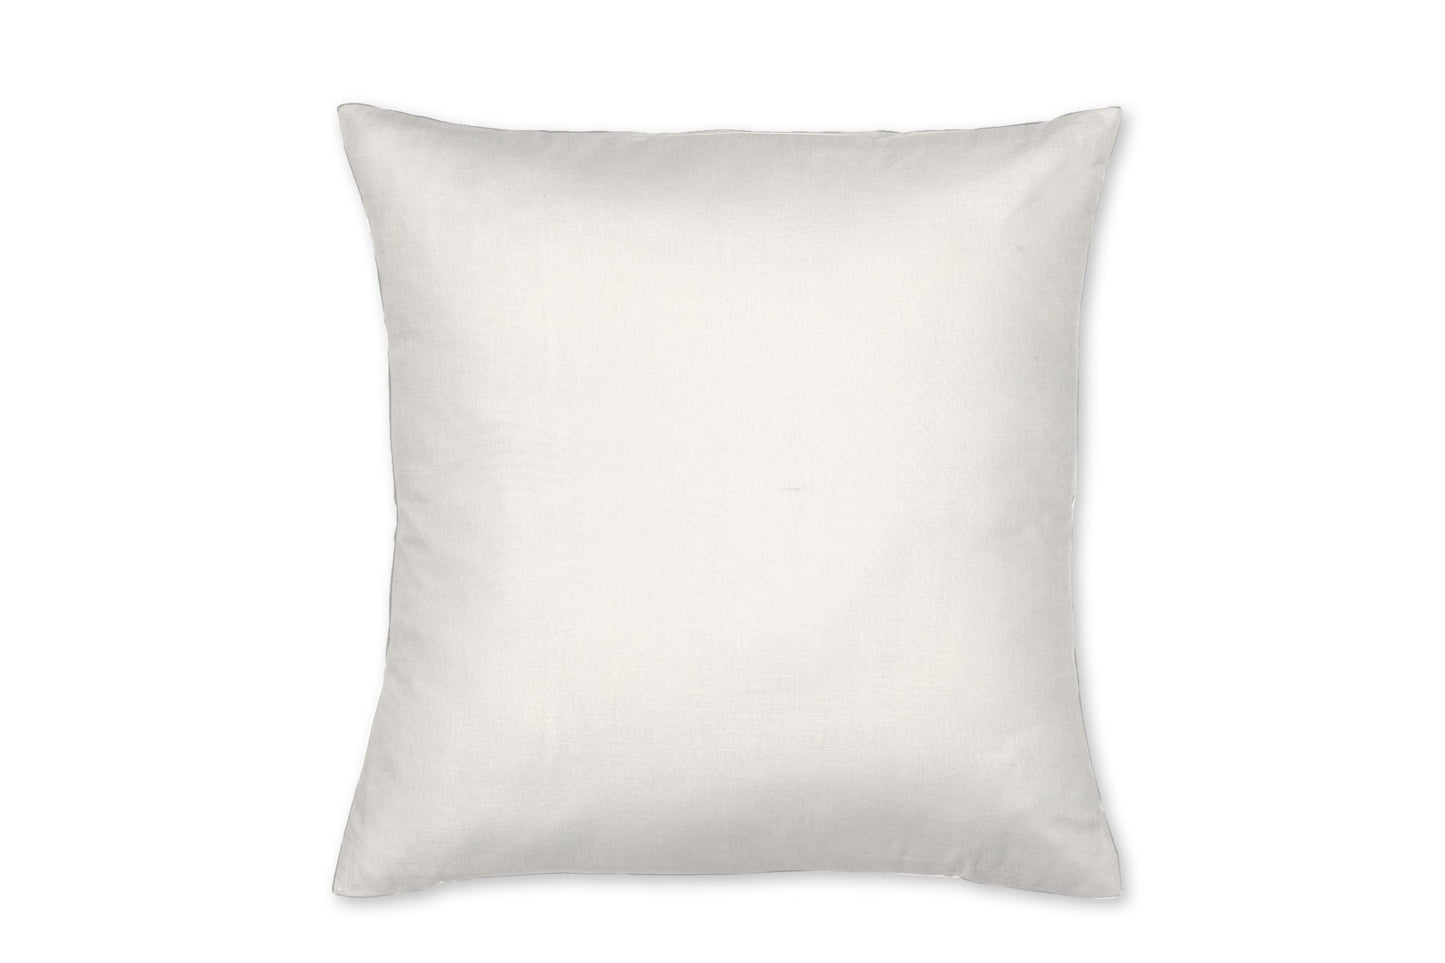 Ivory Linen Throw Pillow